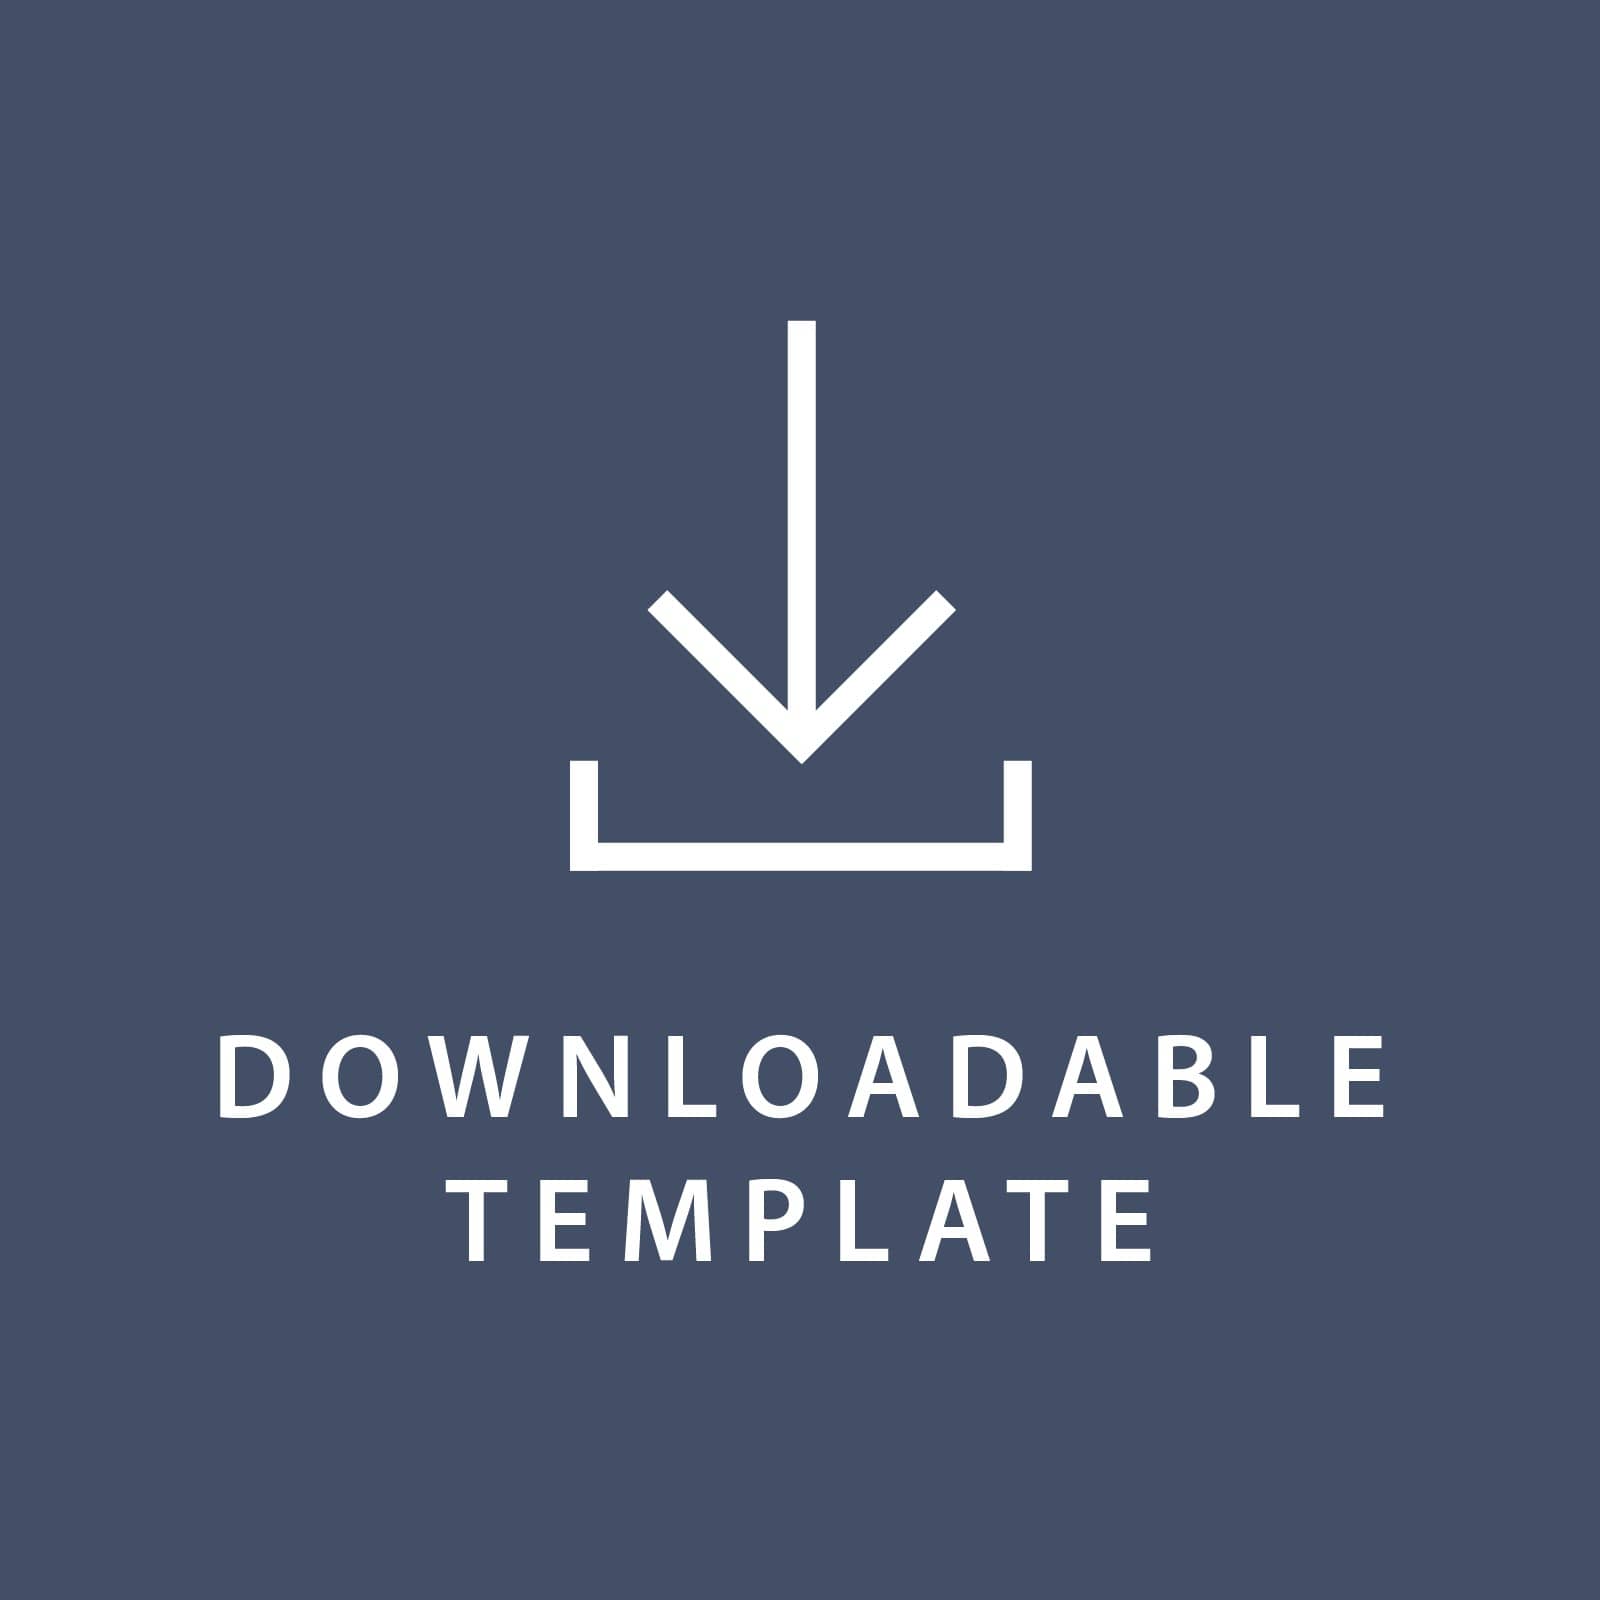 Template for 5.5 x 8.5 Invitations Gartner Studios Template tmplt0860